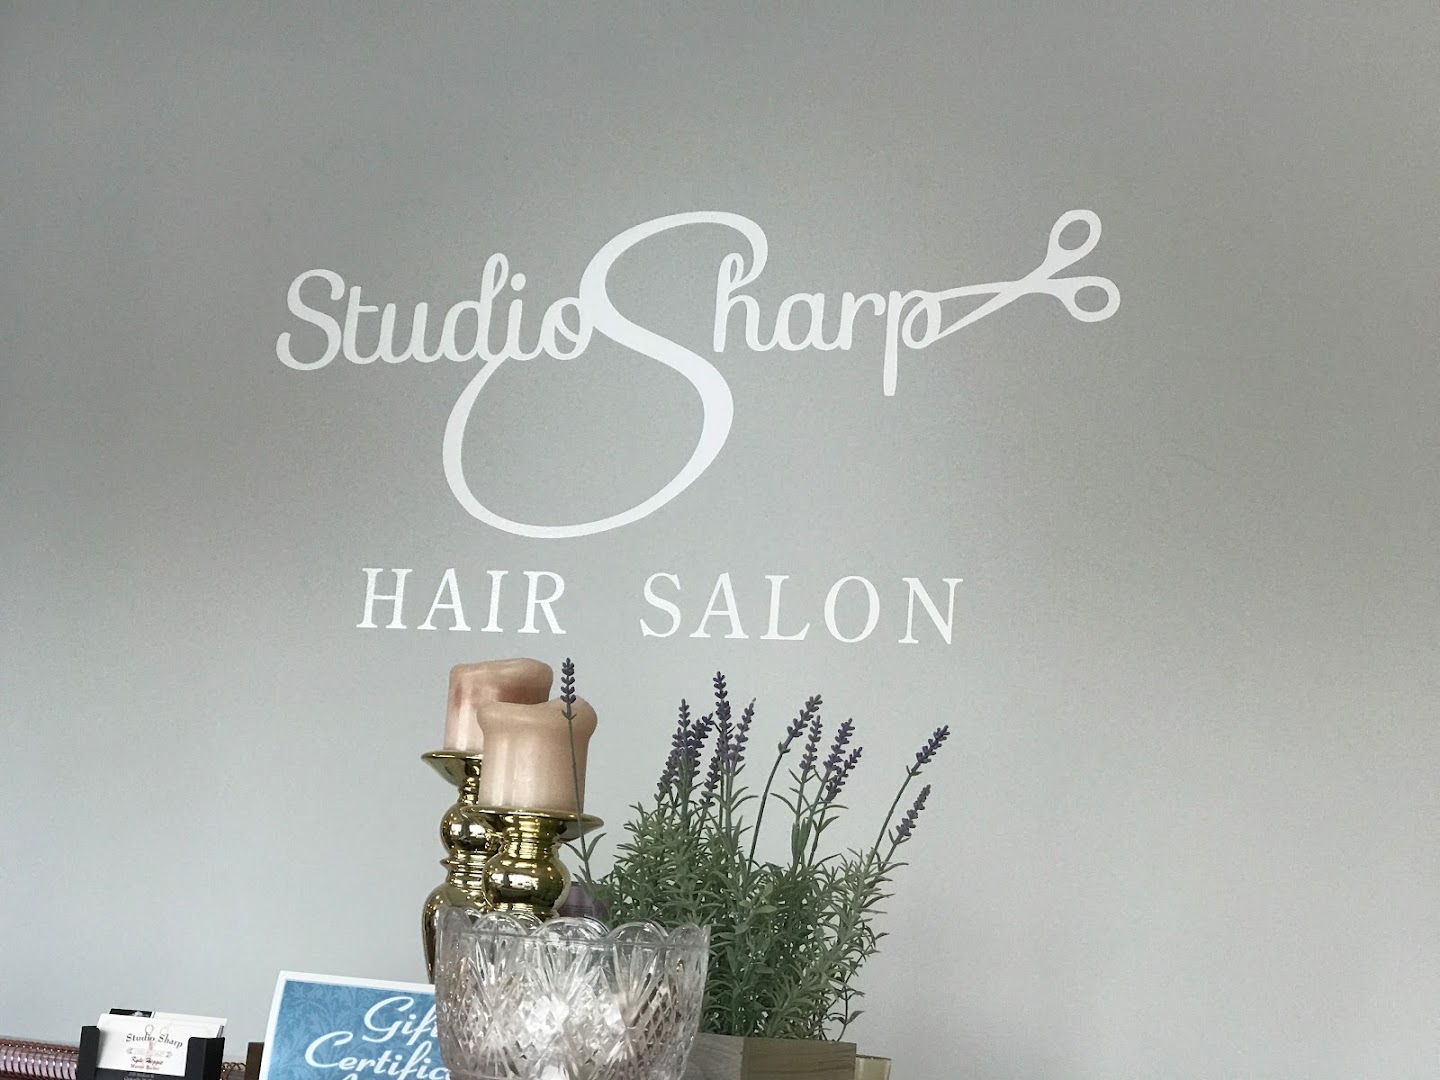 Studio Sharp Salon & Spa